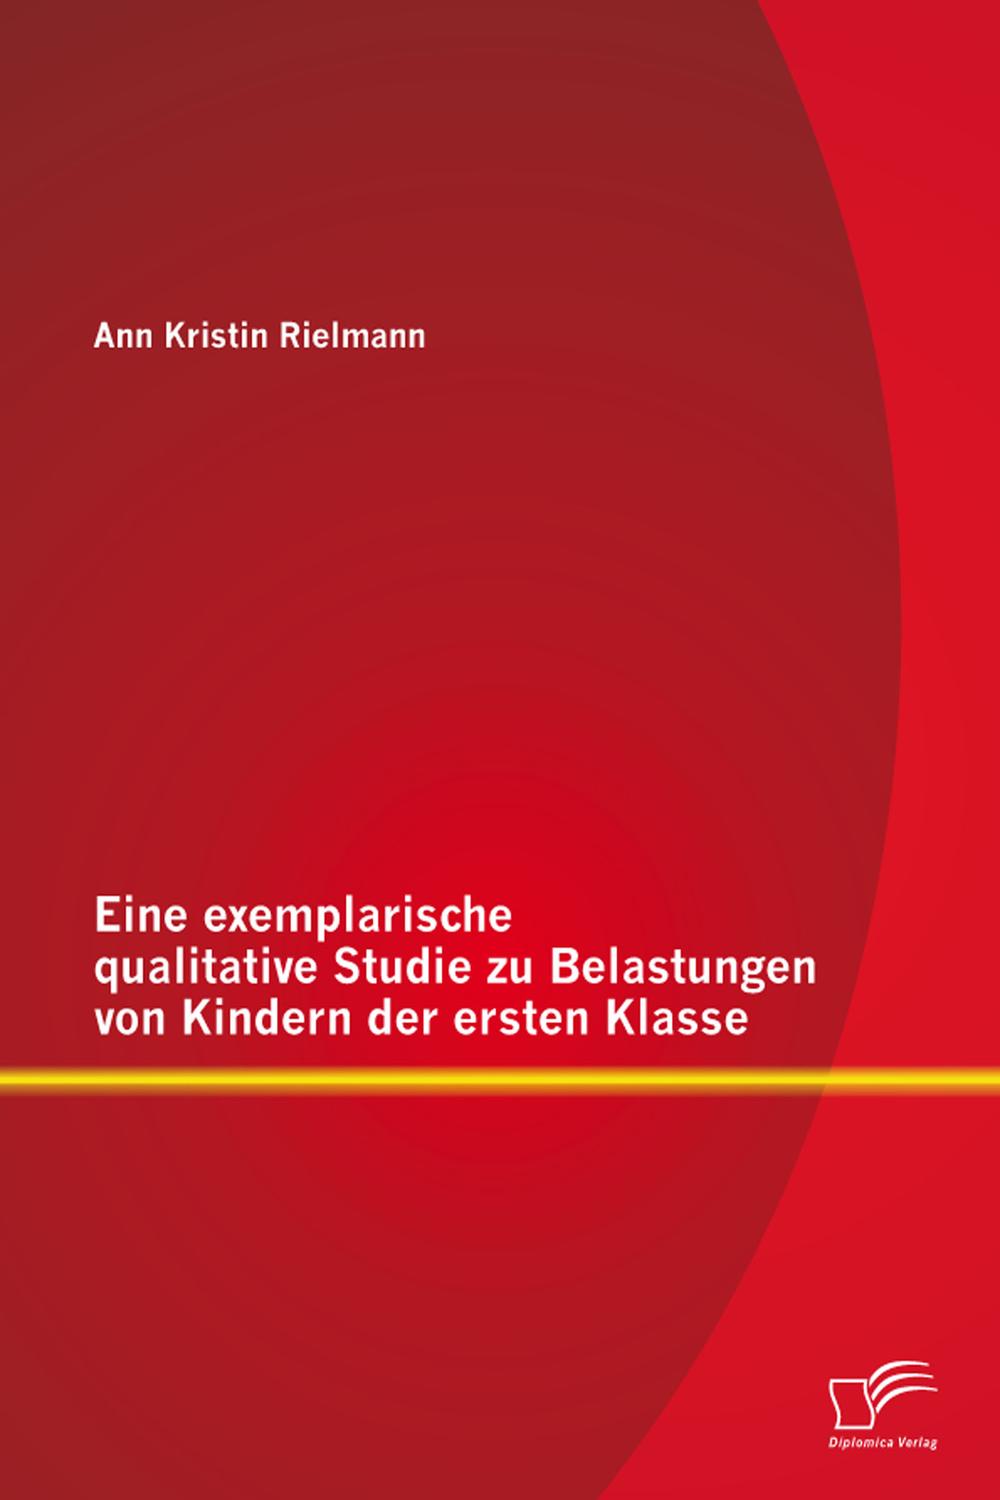 Eine exemplarische qualitative Studie zu Belastungen von Kindern der ersten Klasse - Ann Kristin Rielmann